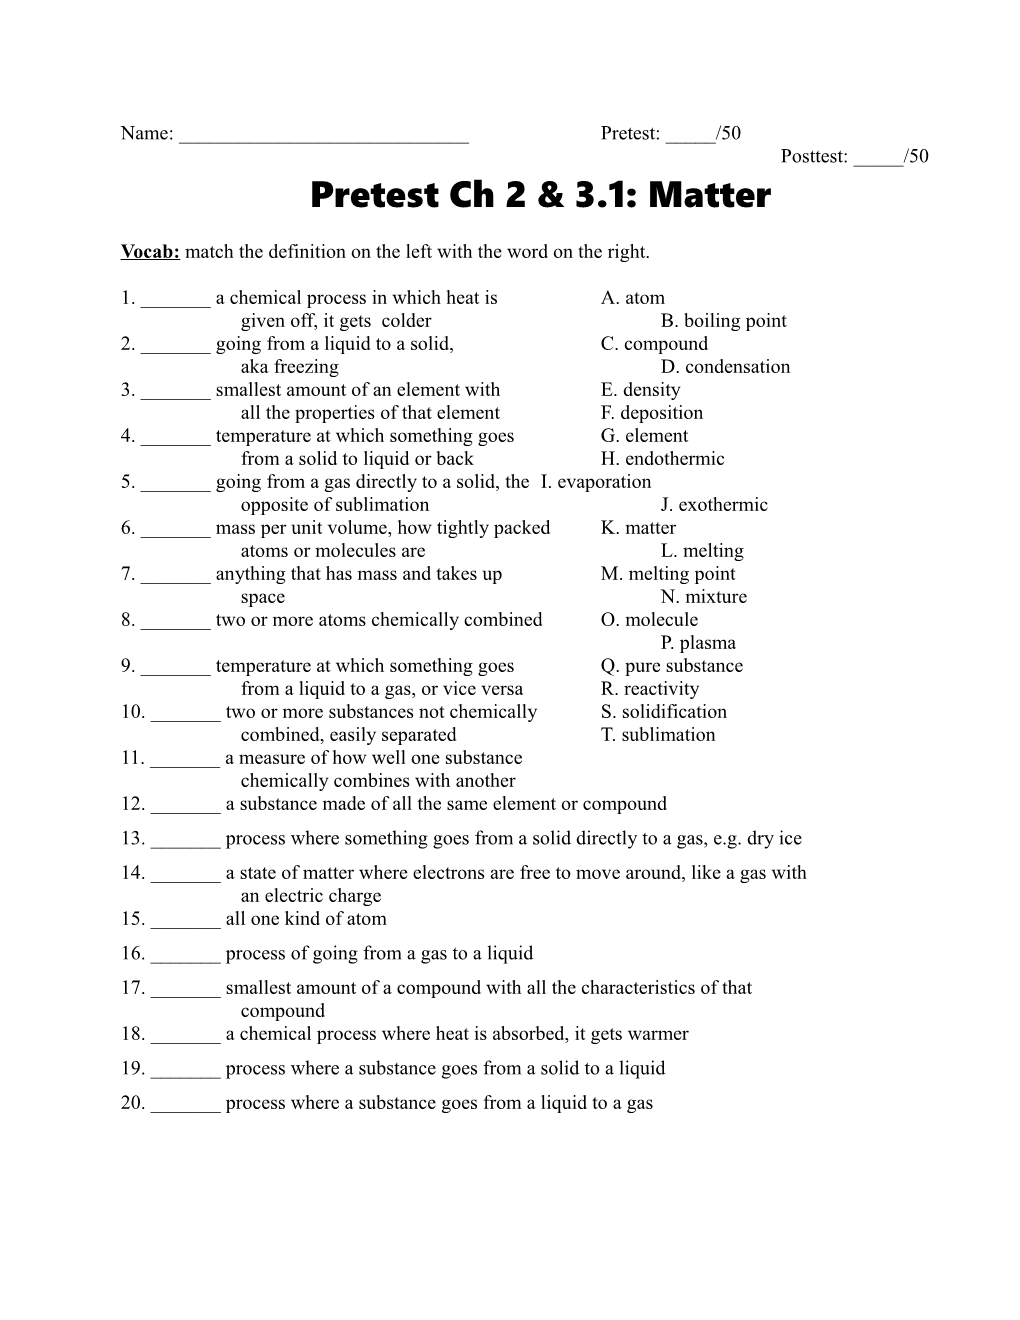 Pretest Ch 2 & 3.1: Matter